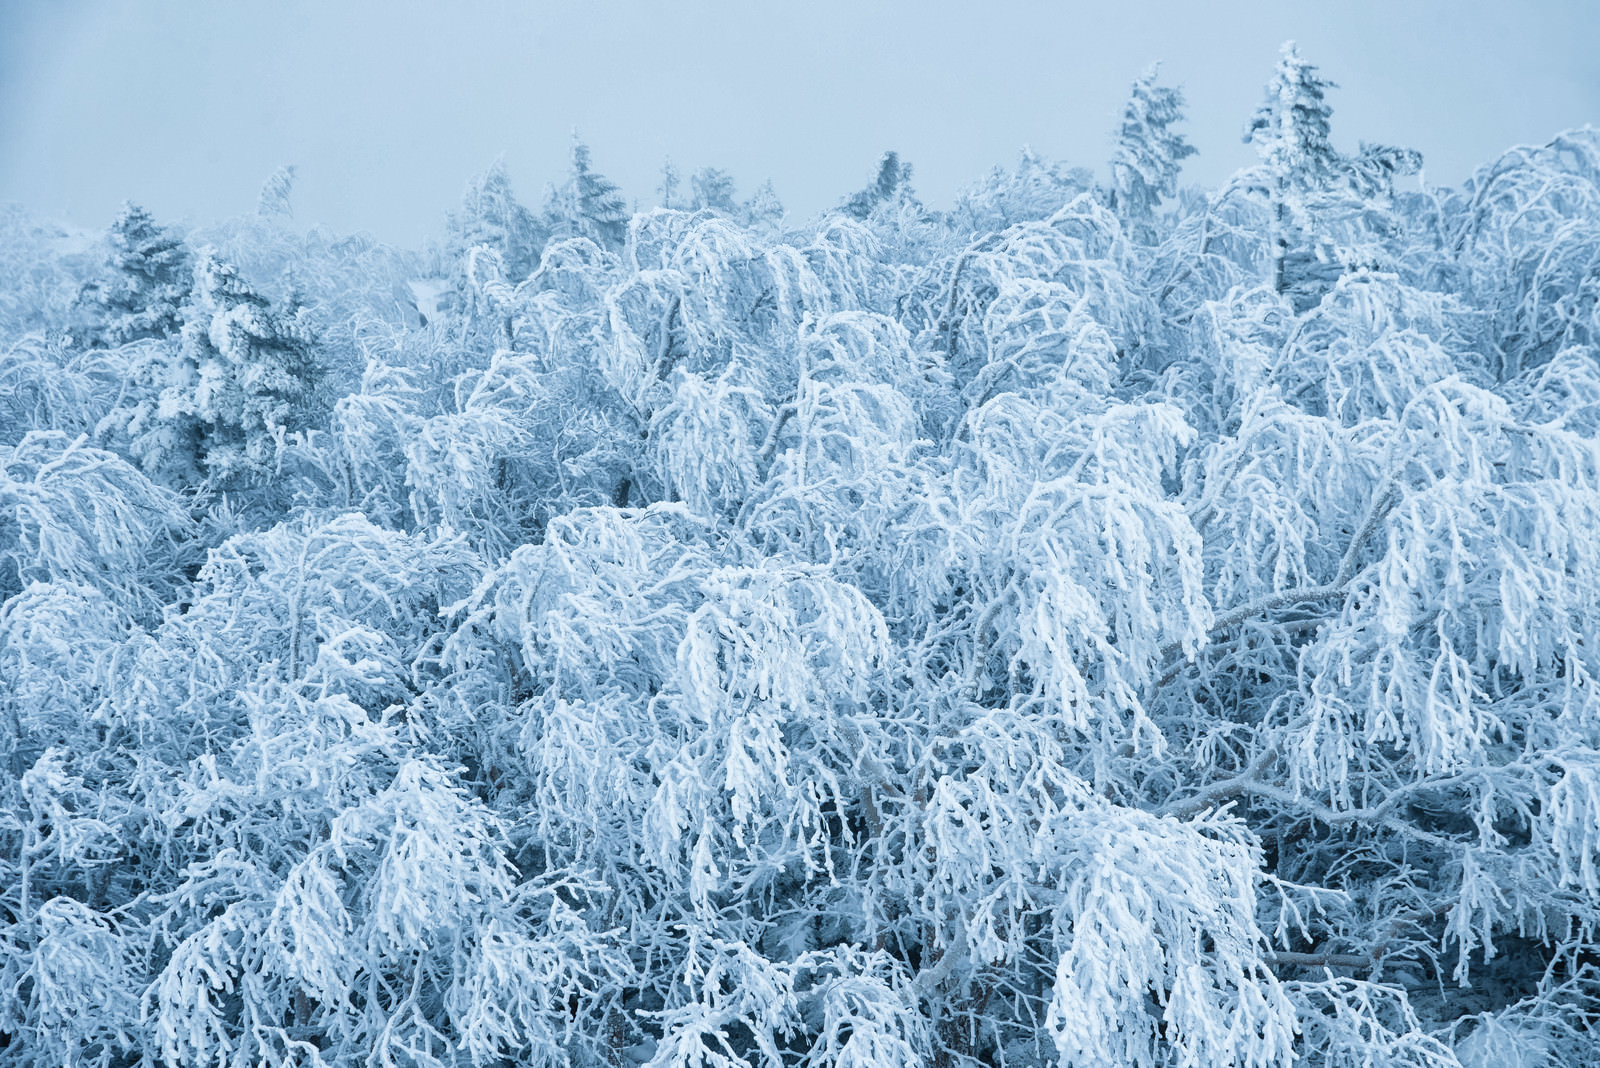 「不気味に白く凍った樹氷の枝 | フリー素材のぱくたそ」の写真